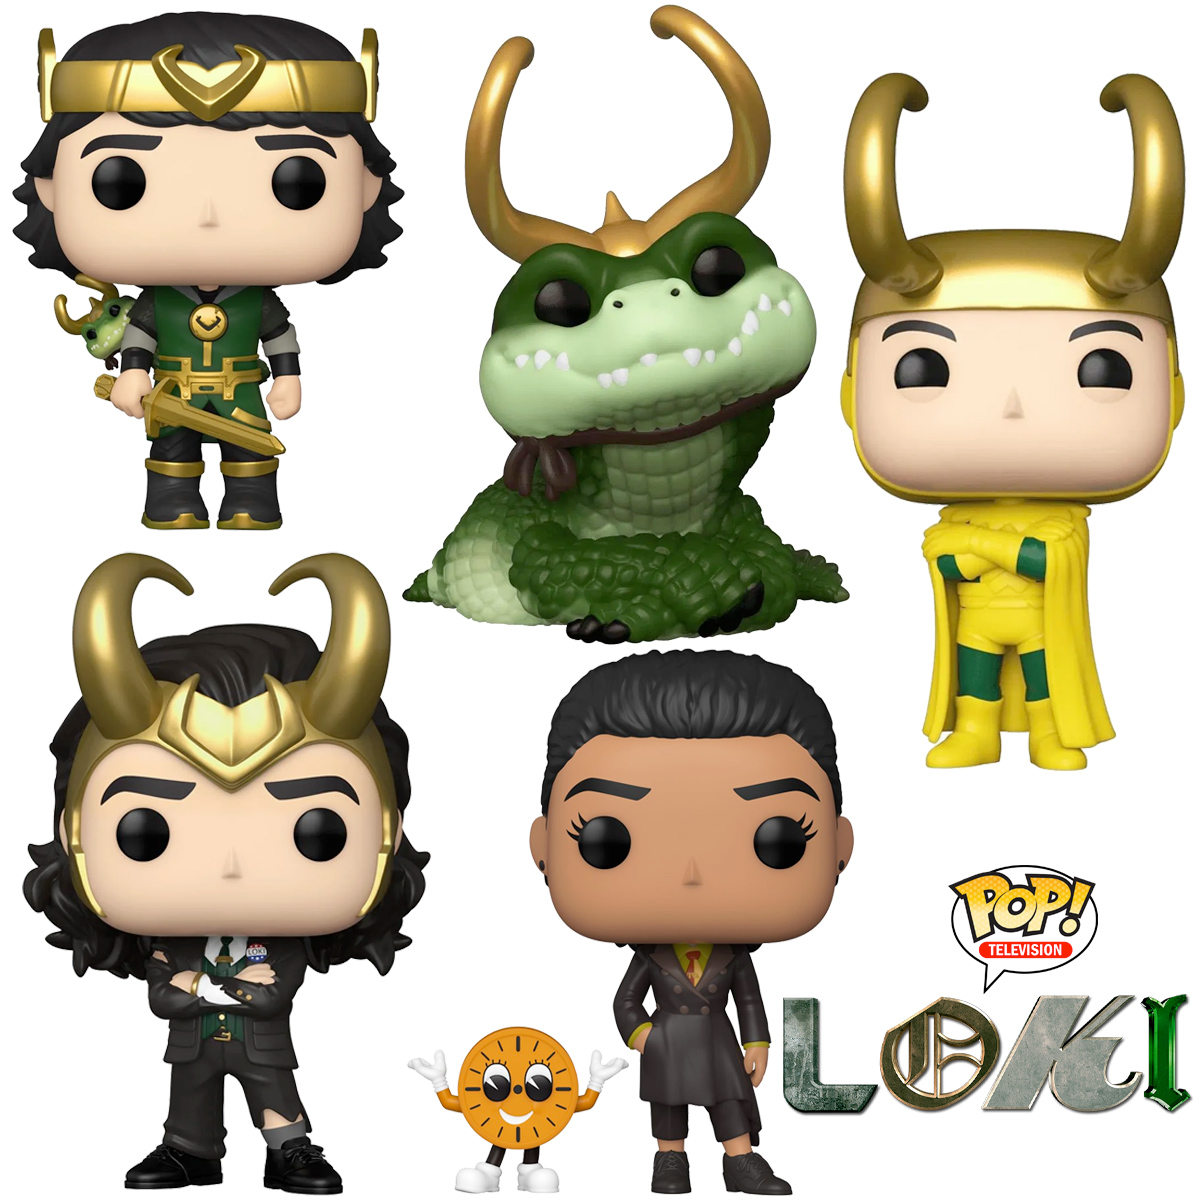 Bonecos Pop! da Série Loki: Alligator Loki, Kid Loki, Classic Loki, President Loki e Ravonna Renslayer